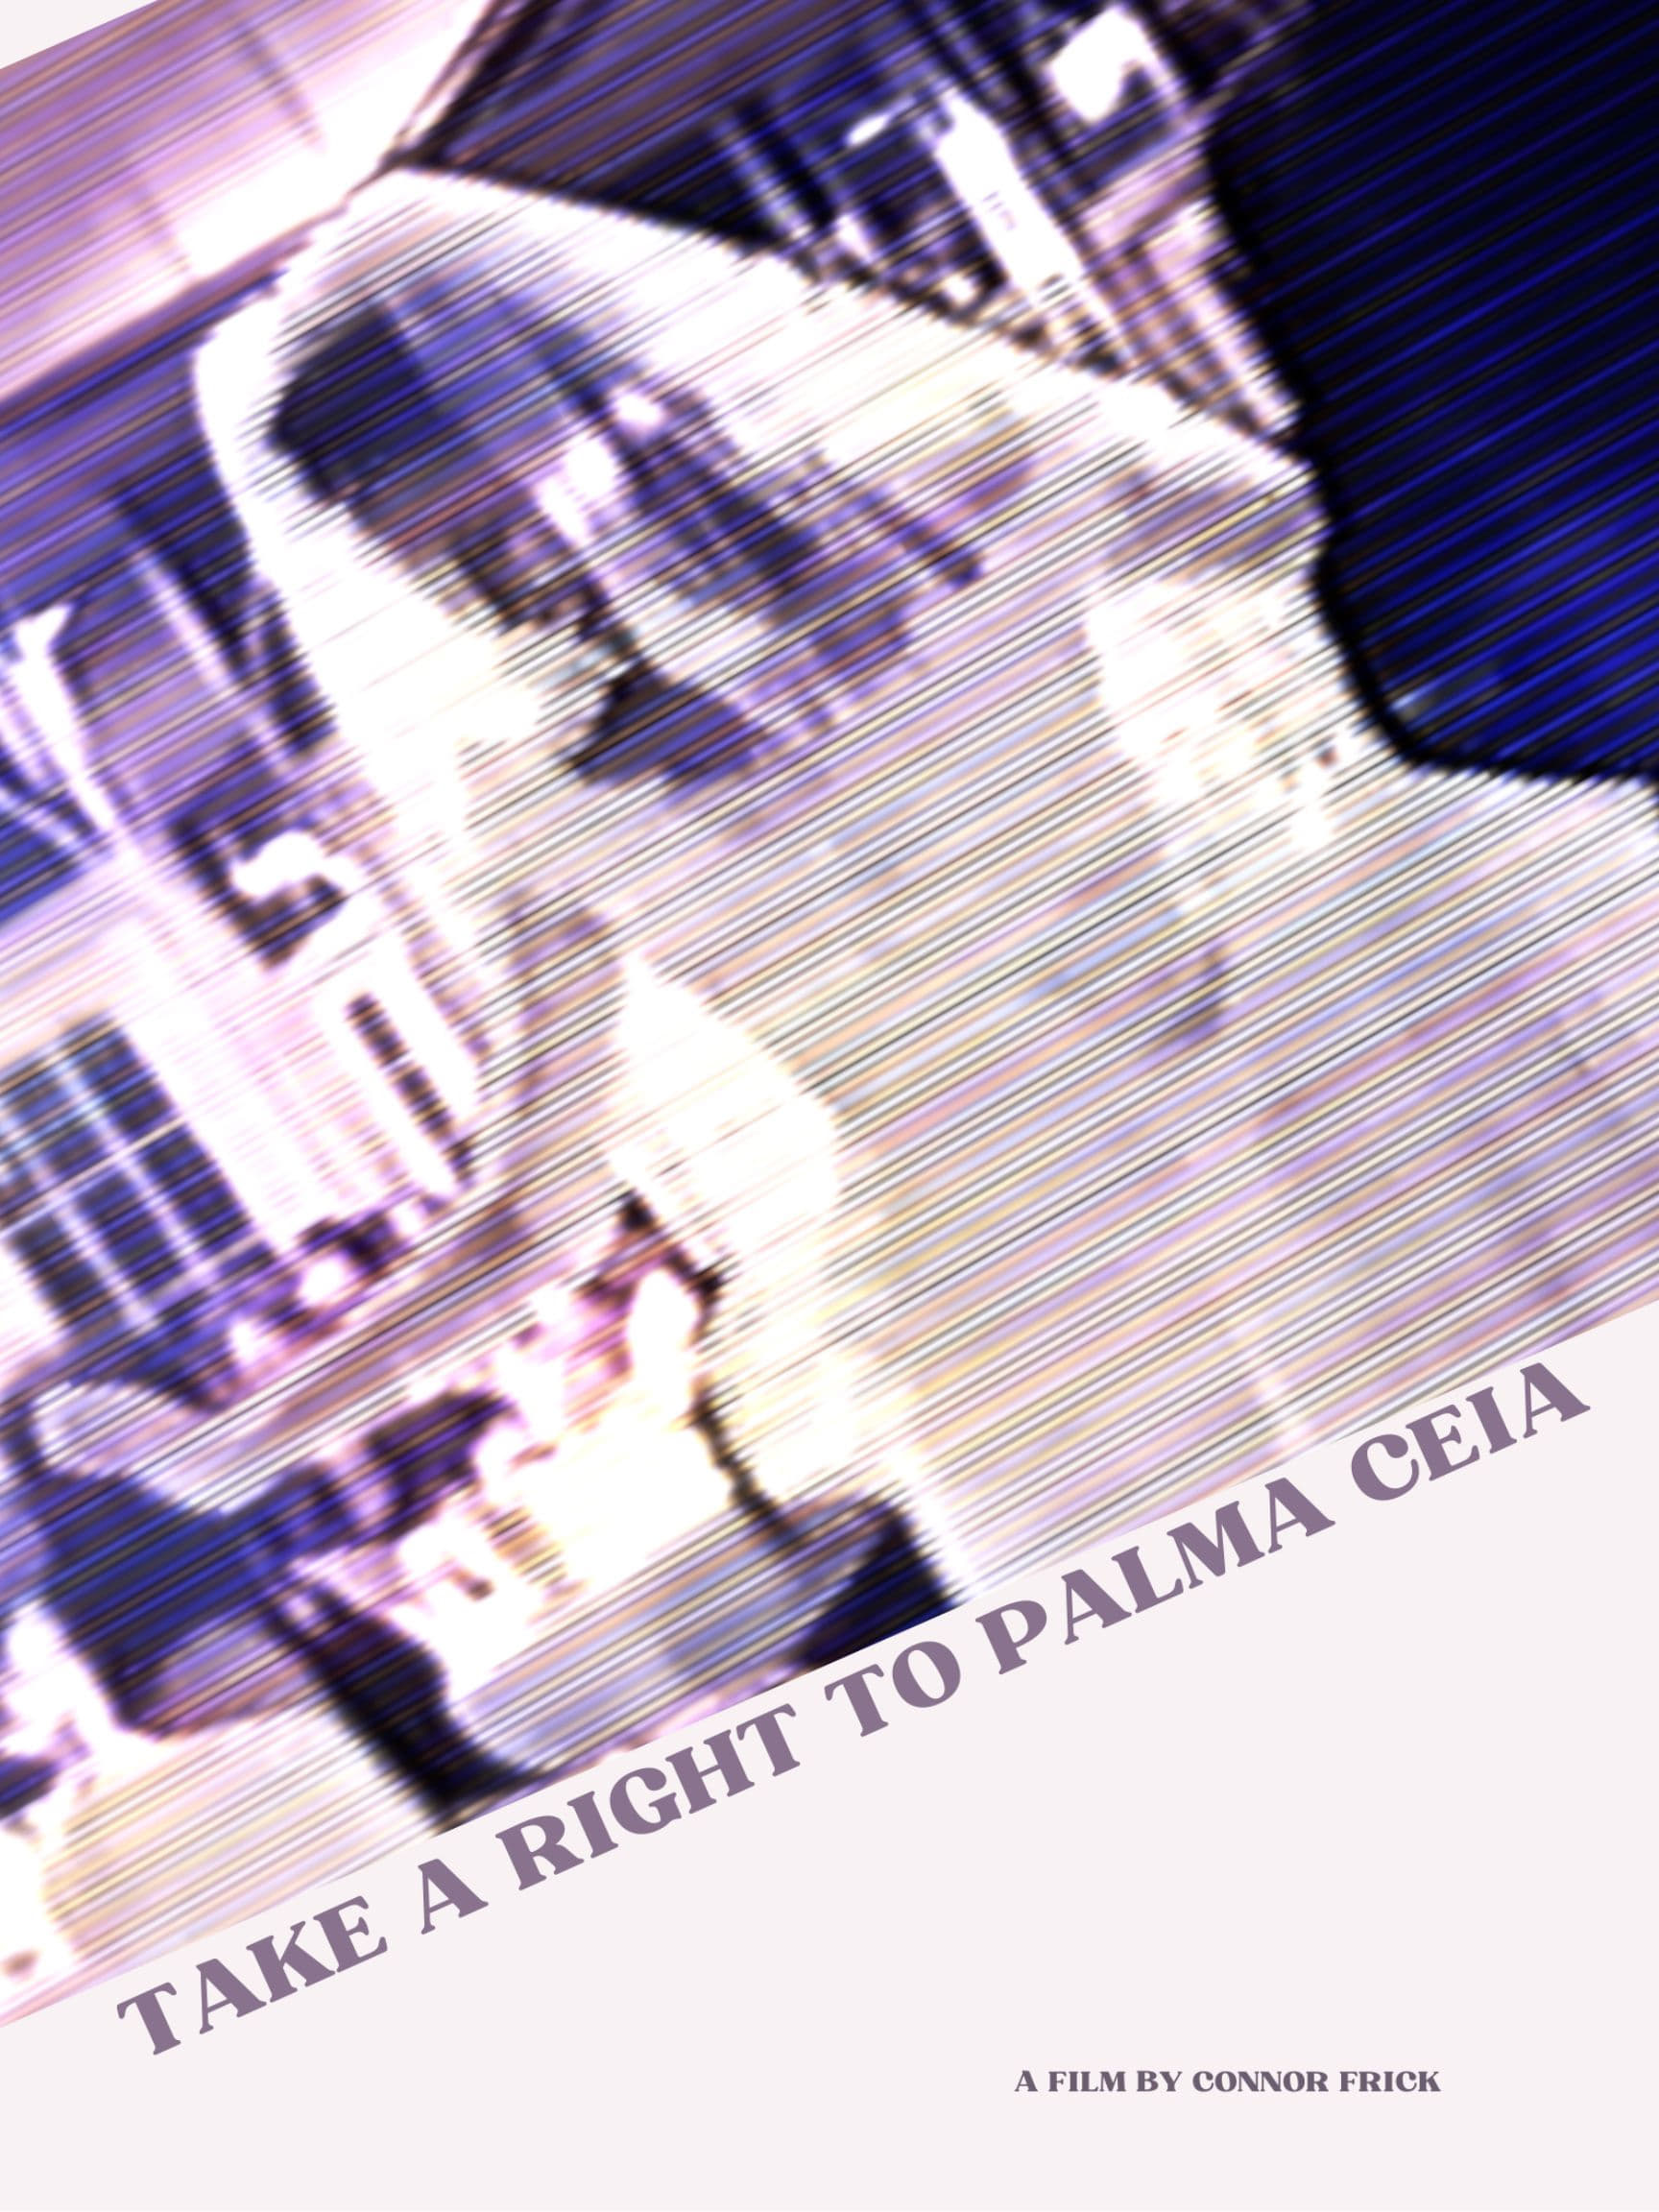 Take a Right to Palma Ceia